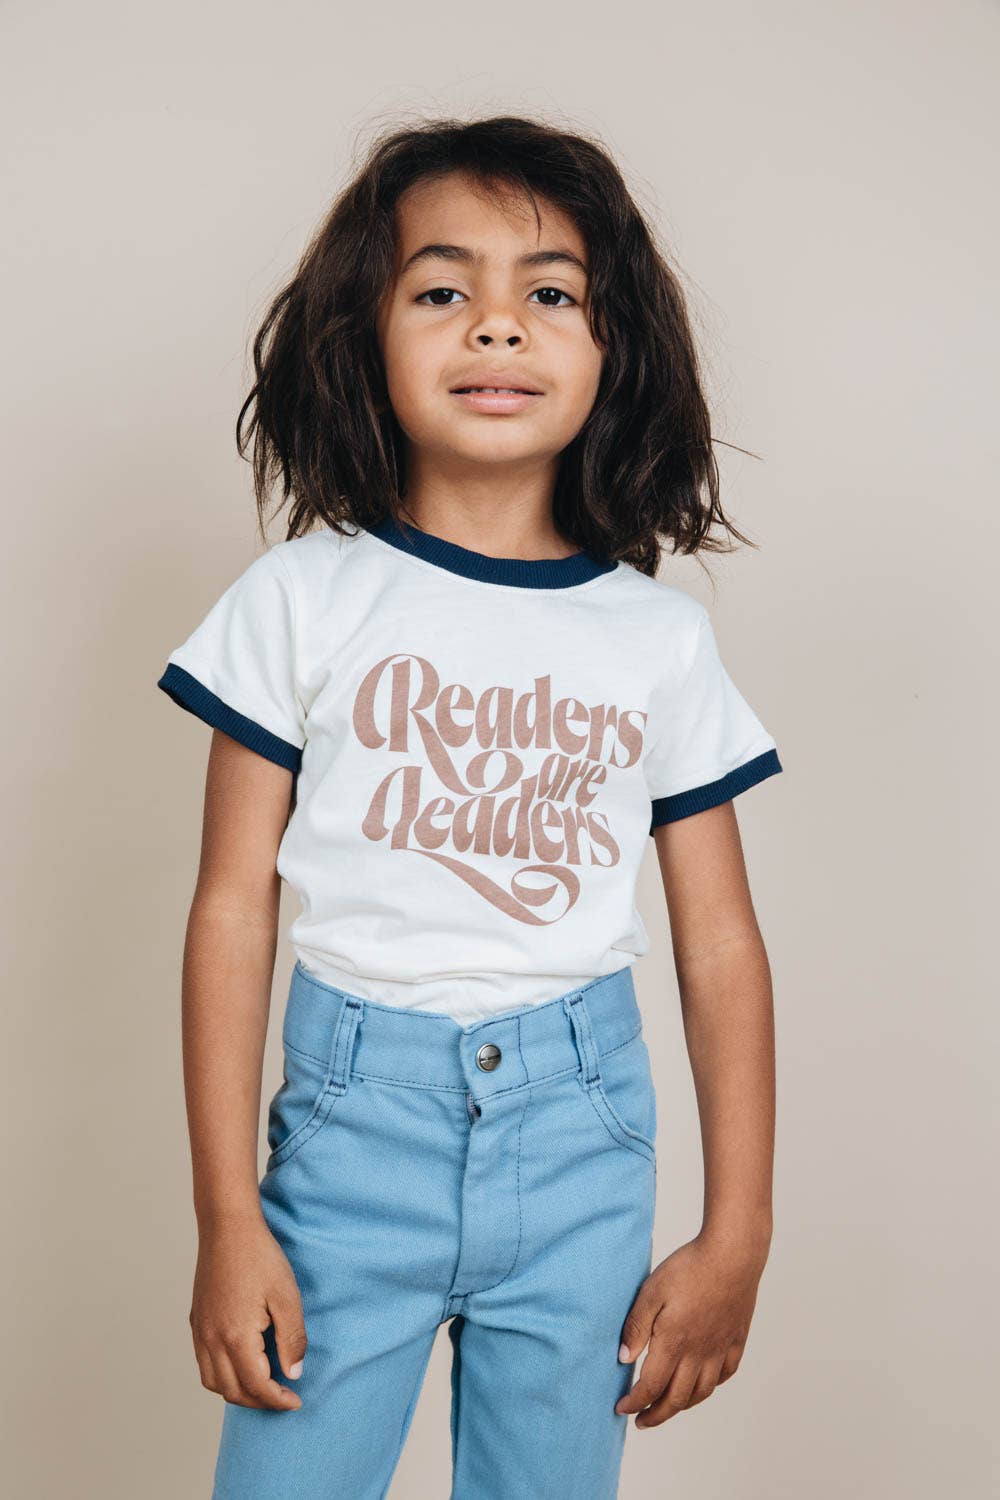 Readers are Leaders Kids Tee Shirt